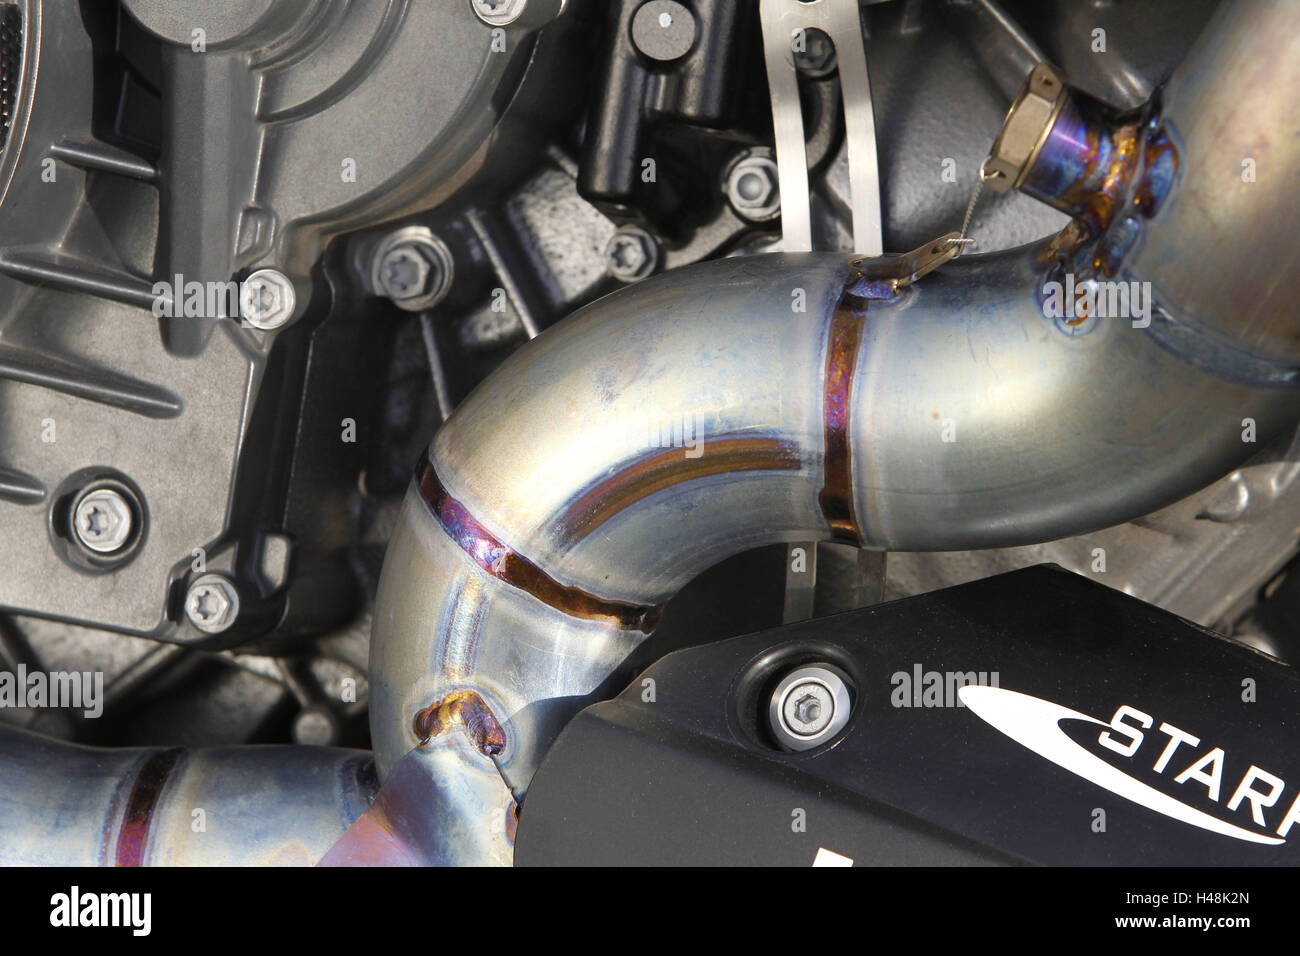 Motociclo, dettaglio, scarichi Akrapovic, acciaio inossidabile Foto Stock